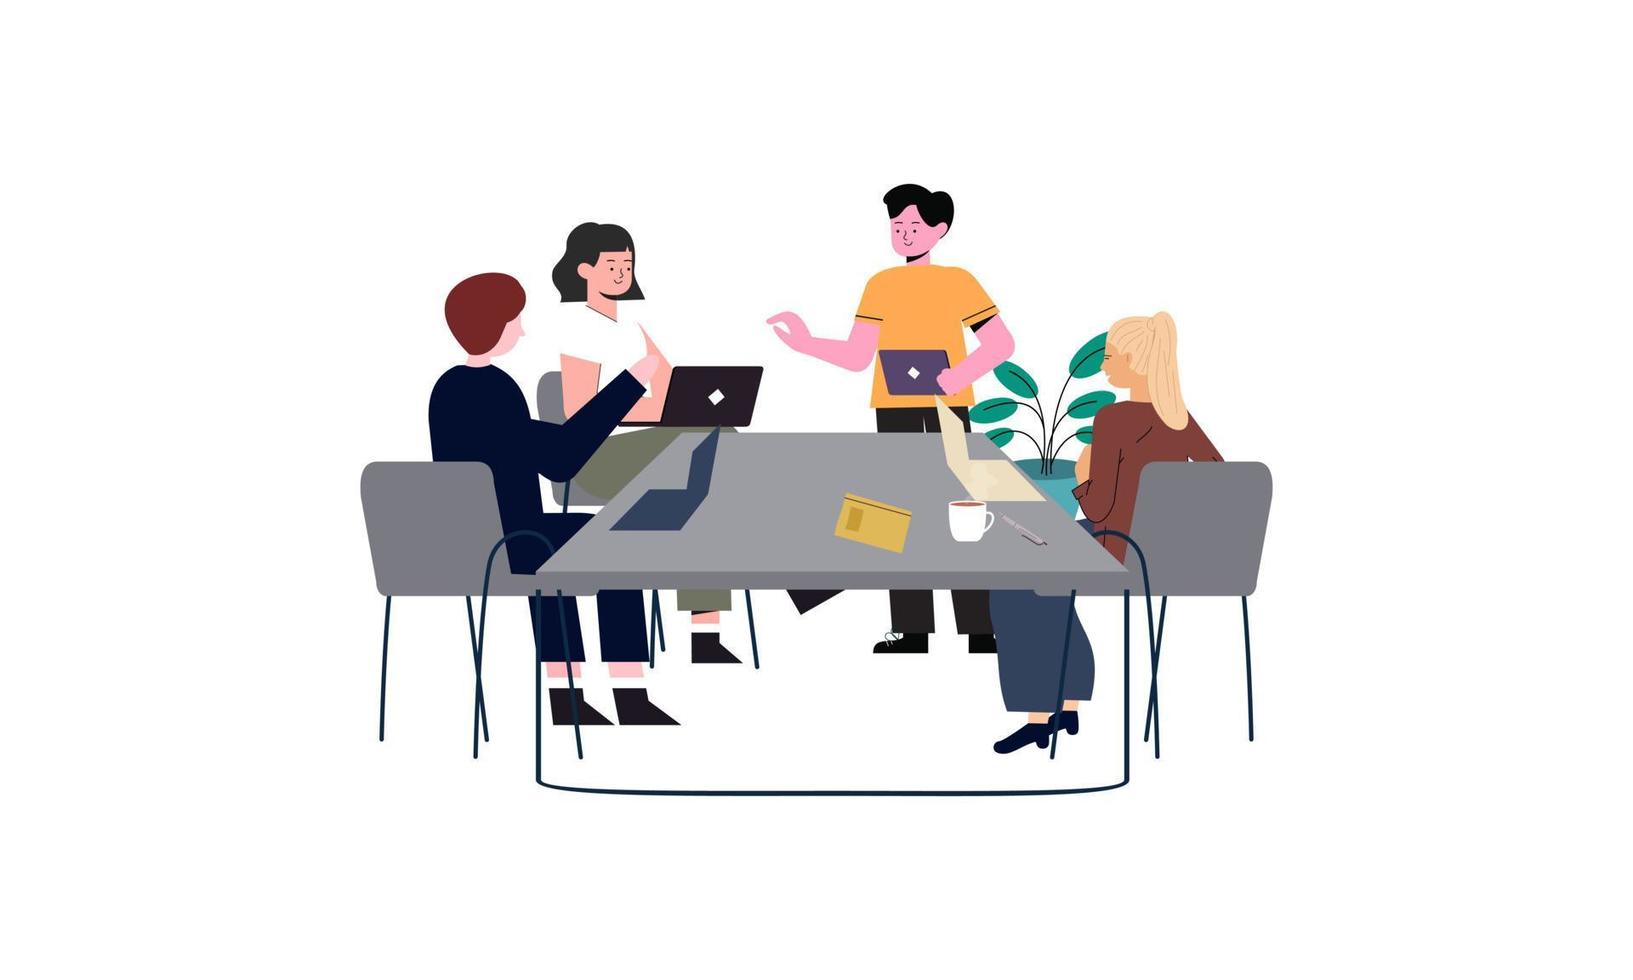 grupo de trabalhadores de escritório sentados em mesas e se comunicando ou conversando entre si vetor